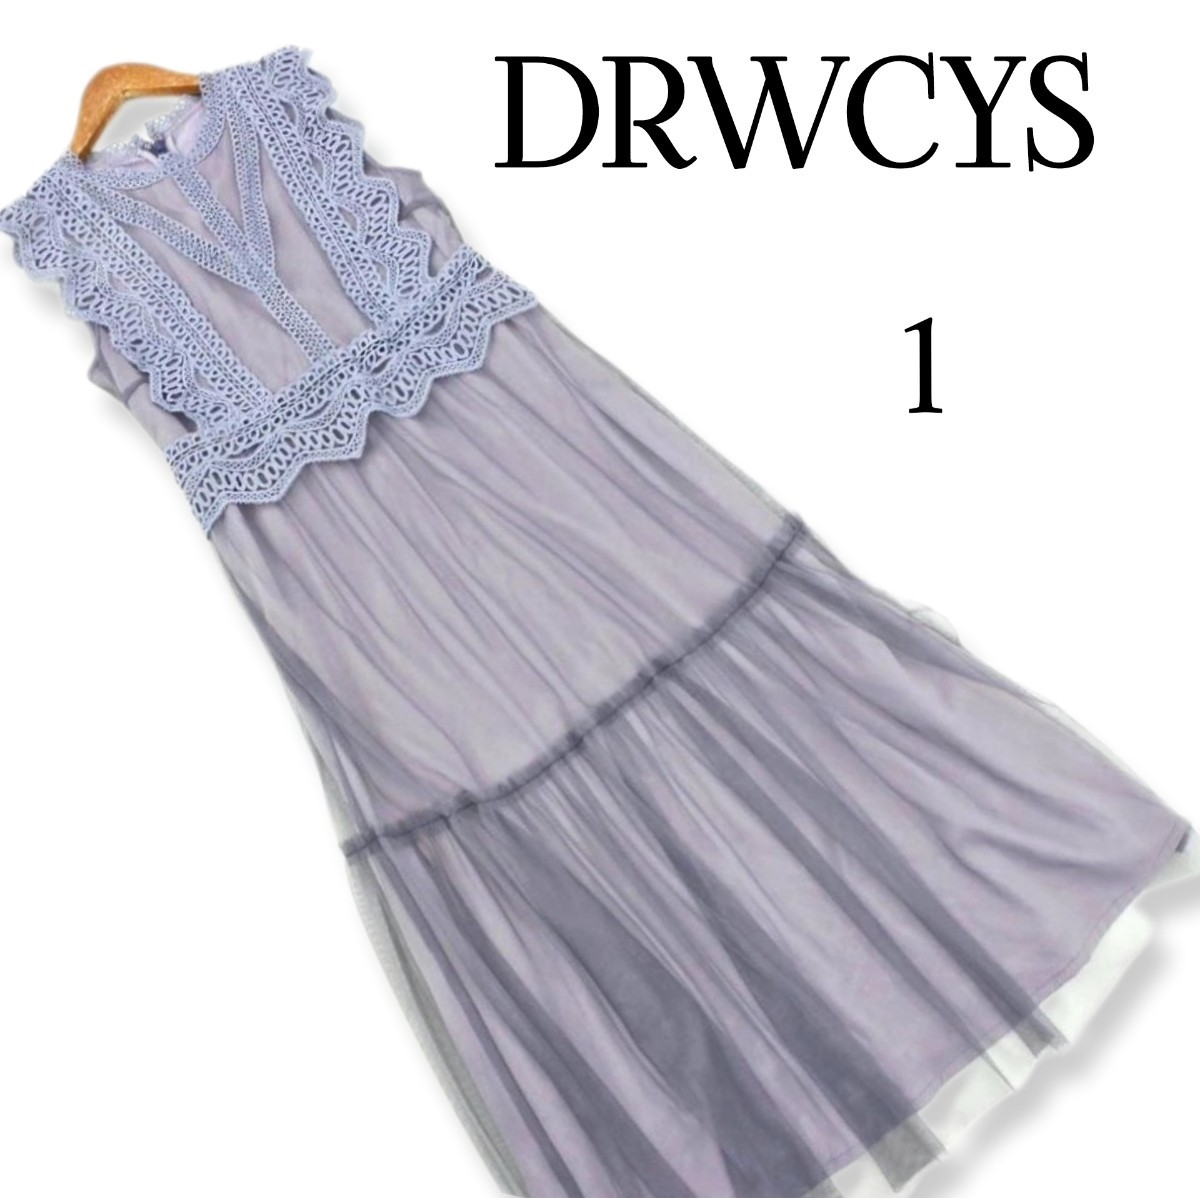 DRWCYS ドロシーズ 総レース ワンピース size1/グレー